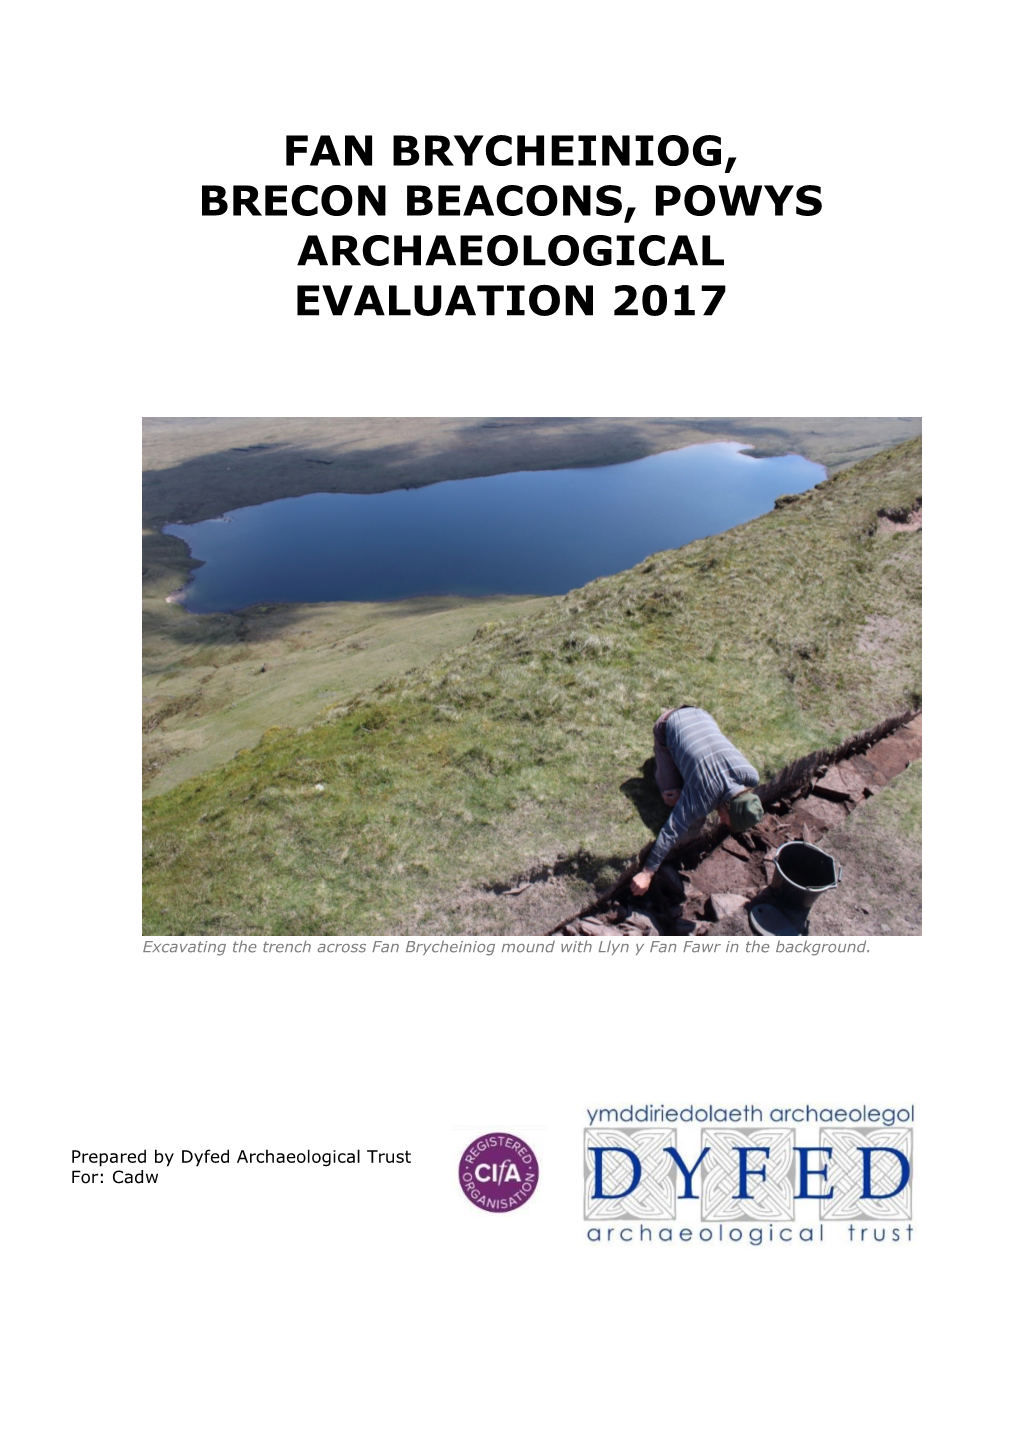 Fan Brycheiniog Archaeological Evaluation 2017